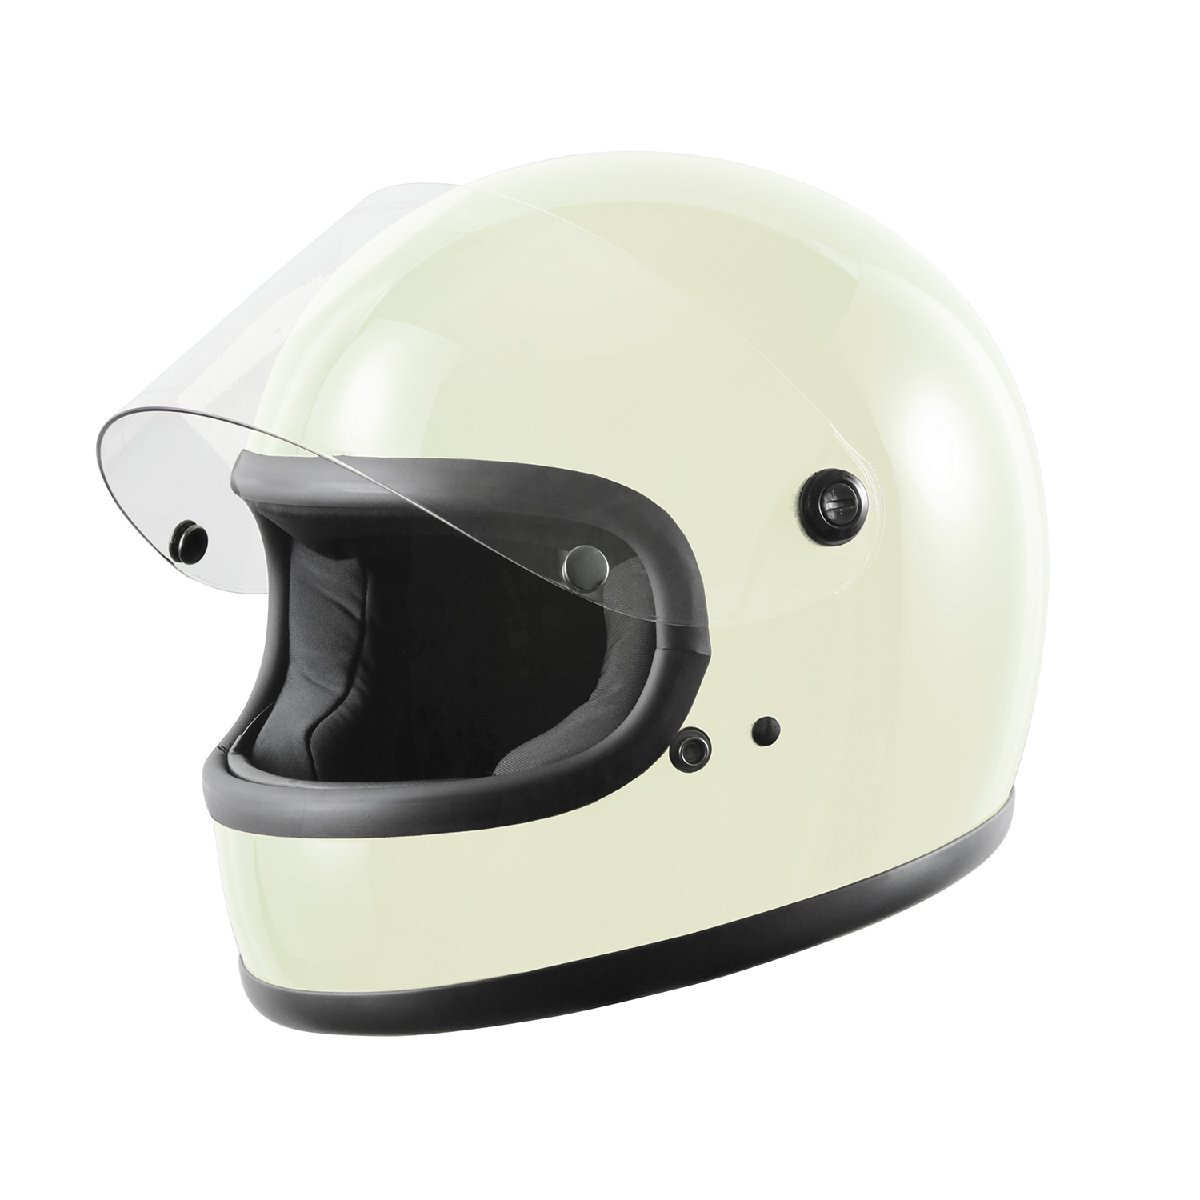 ヘルメット フルフェイス ホワイト ビンテージ レトロ 族ヘル 新品 SG・PSCマーク取得 全排気量対応 バイクパーツセンター_画像2